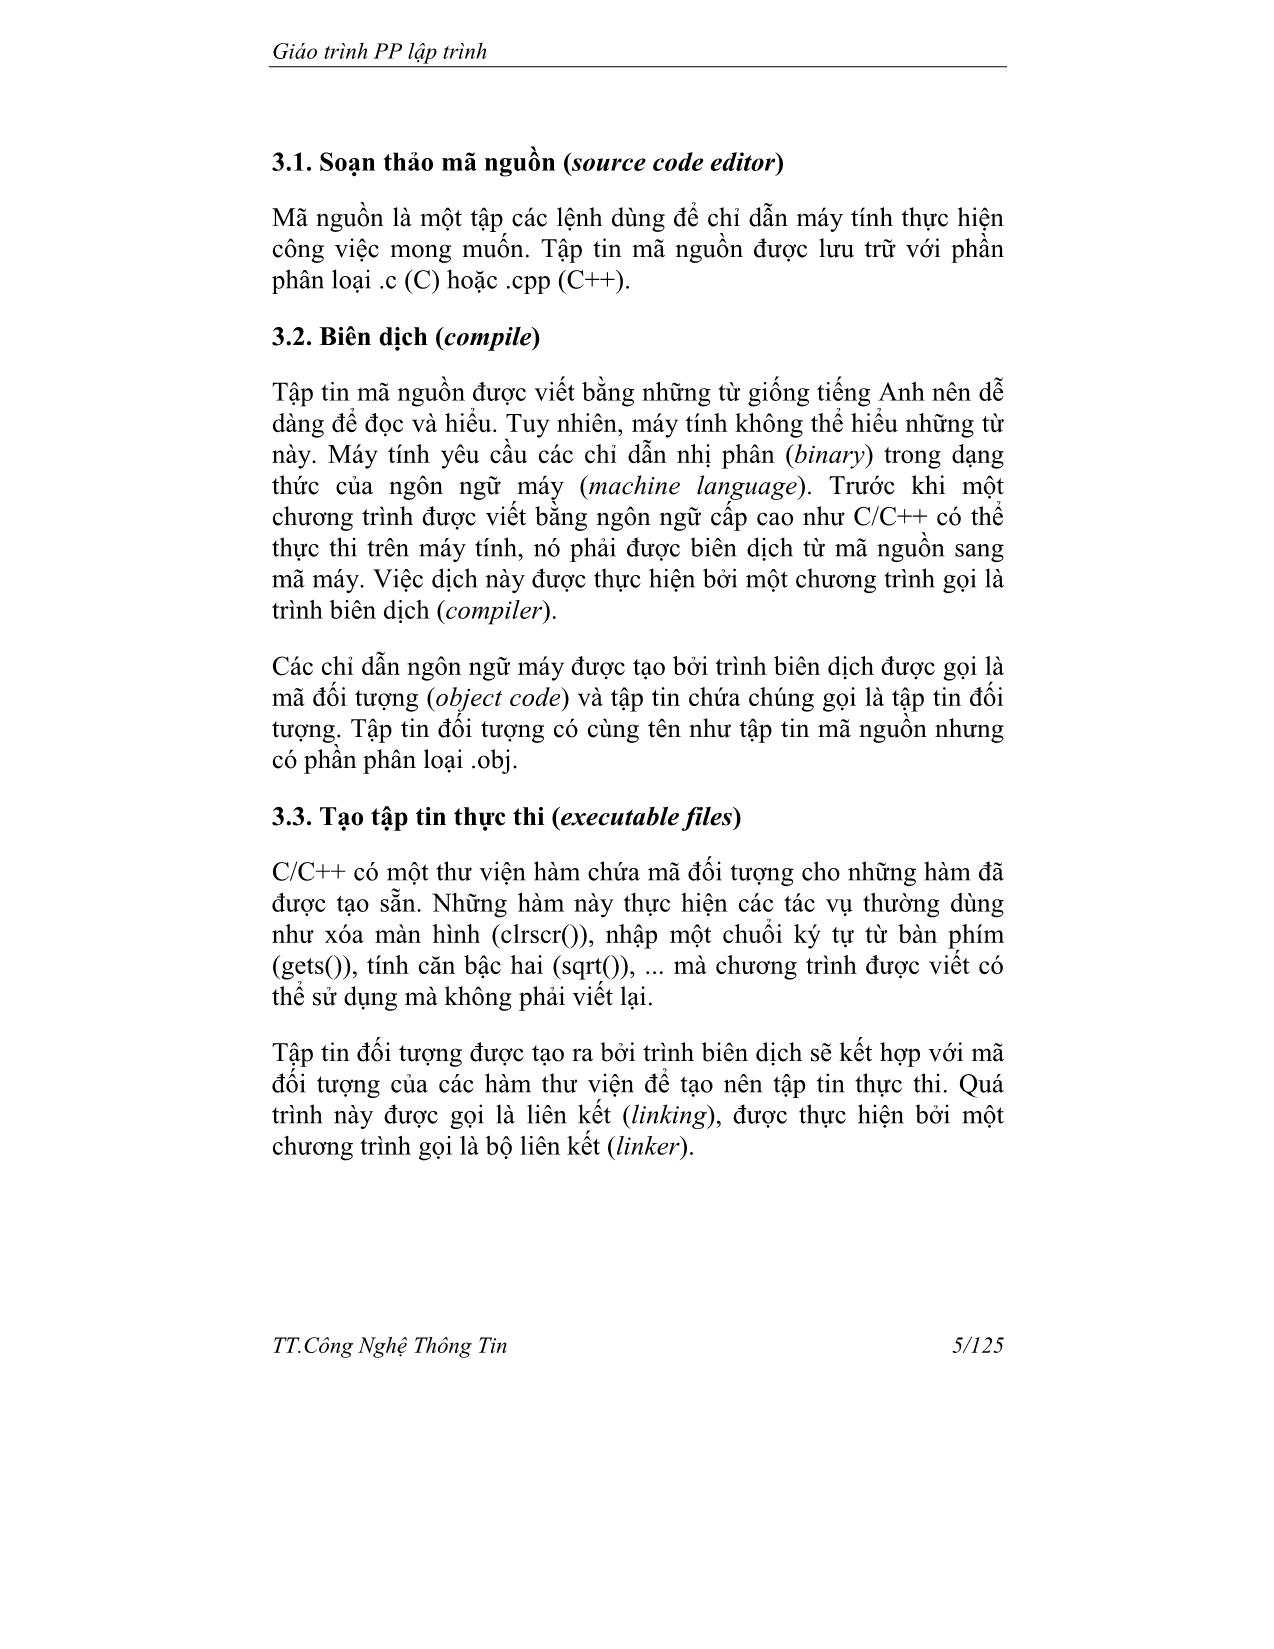 Giáo trình Phương pháp lập trình trang 5